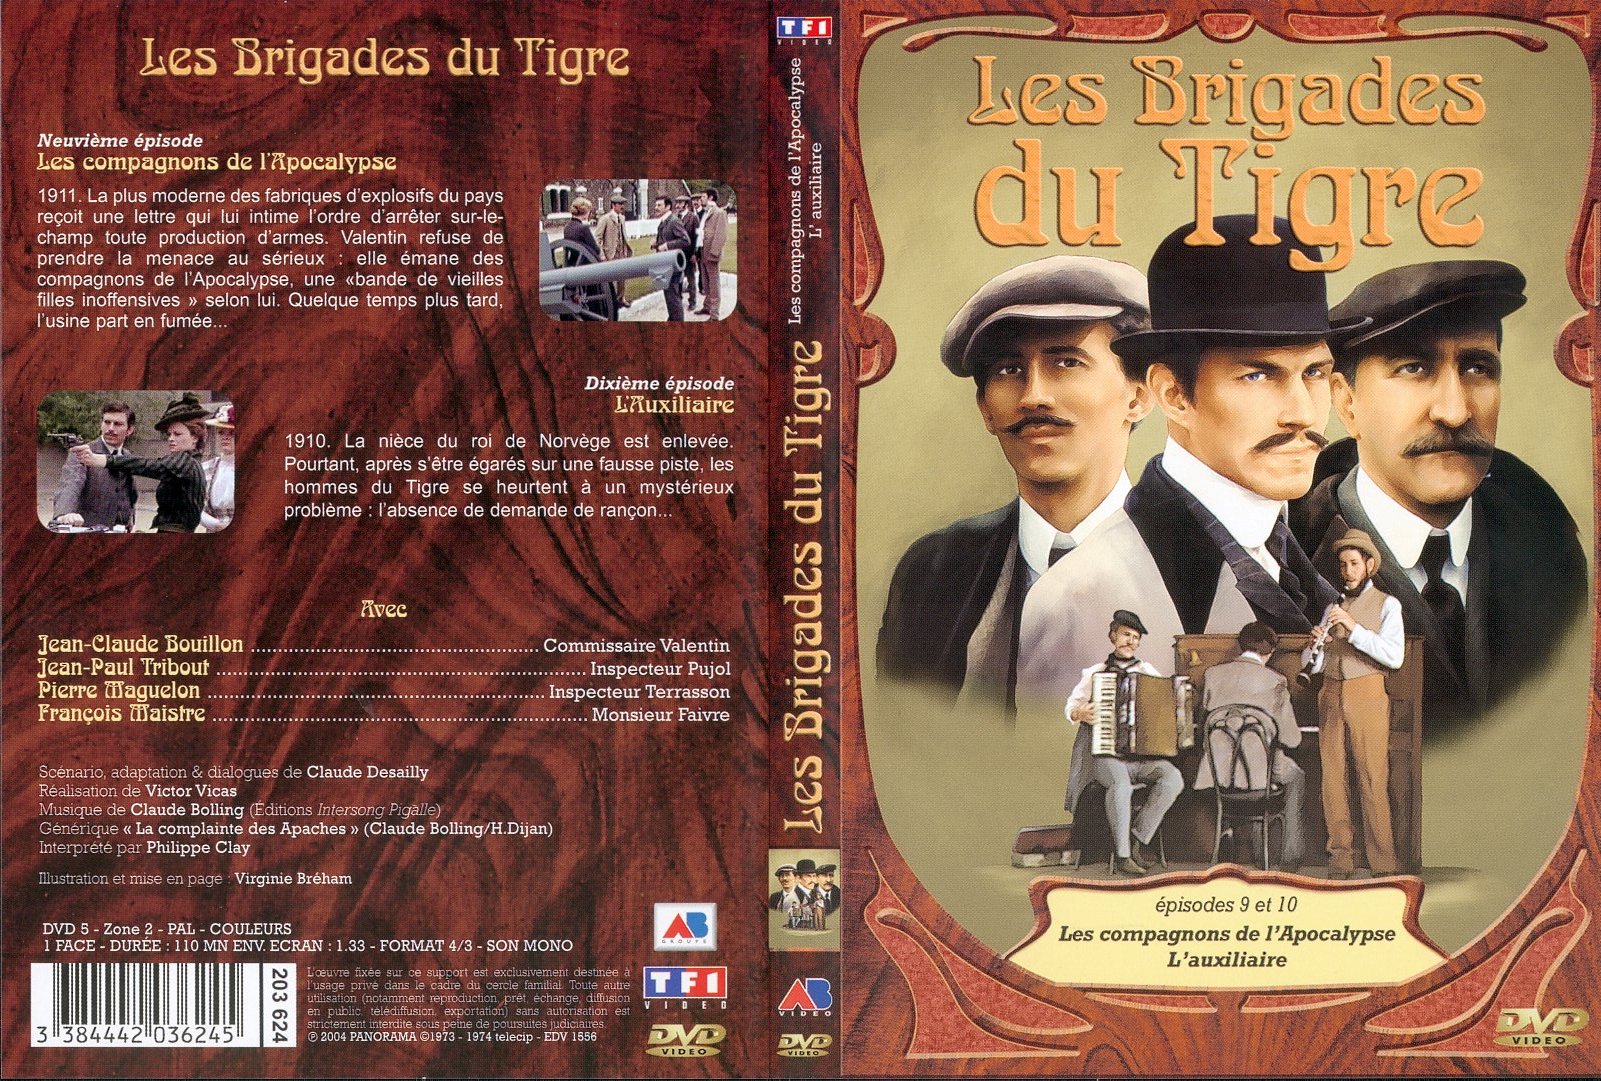 Jaquette DVD Les brigades du tigre vol 5